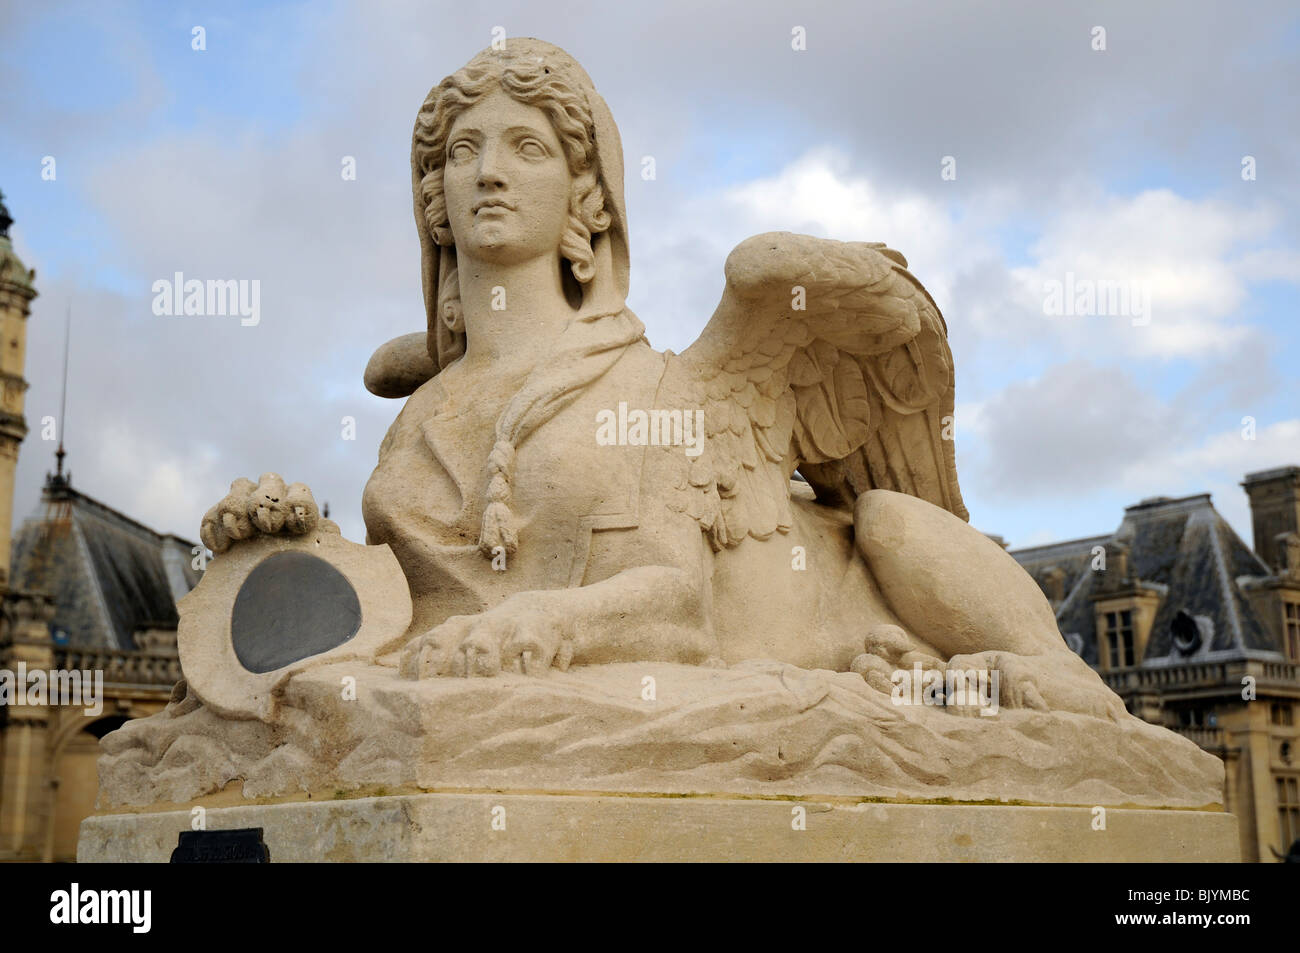 Griechischen Stil Sphinx-Statue im Garten von Chantilly Chateau, Frankreich. Stockfoto